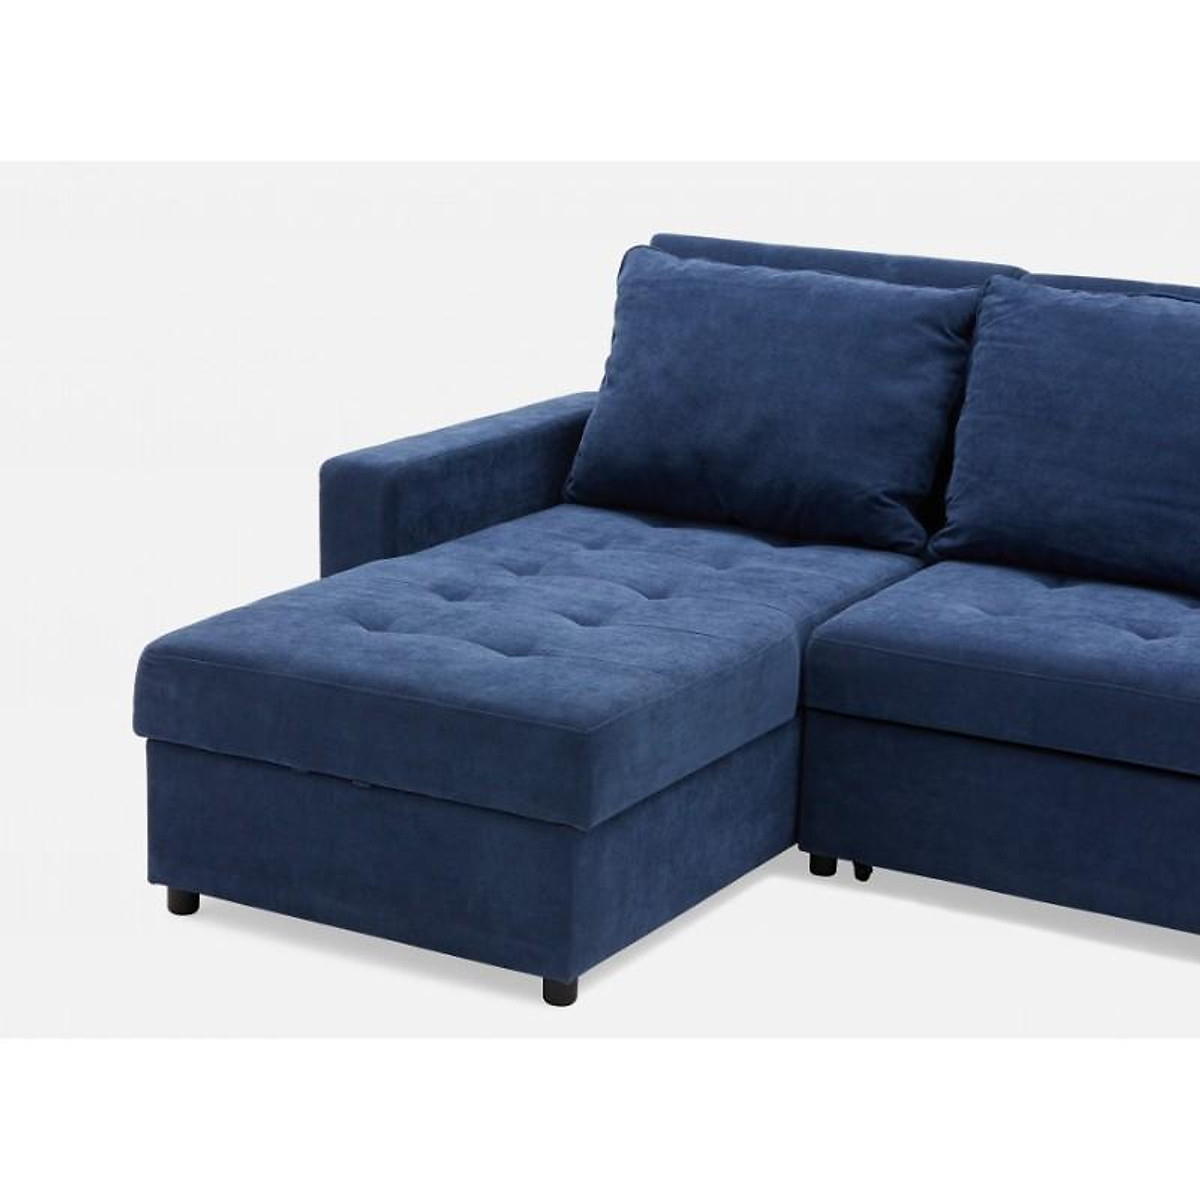 Ghế sofa giường kéo Tundo màu xanh